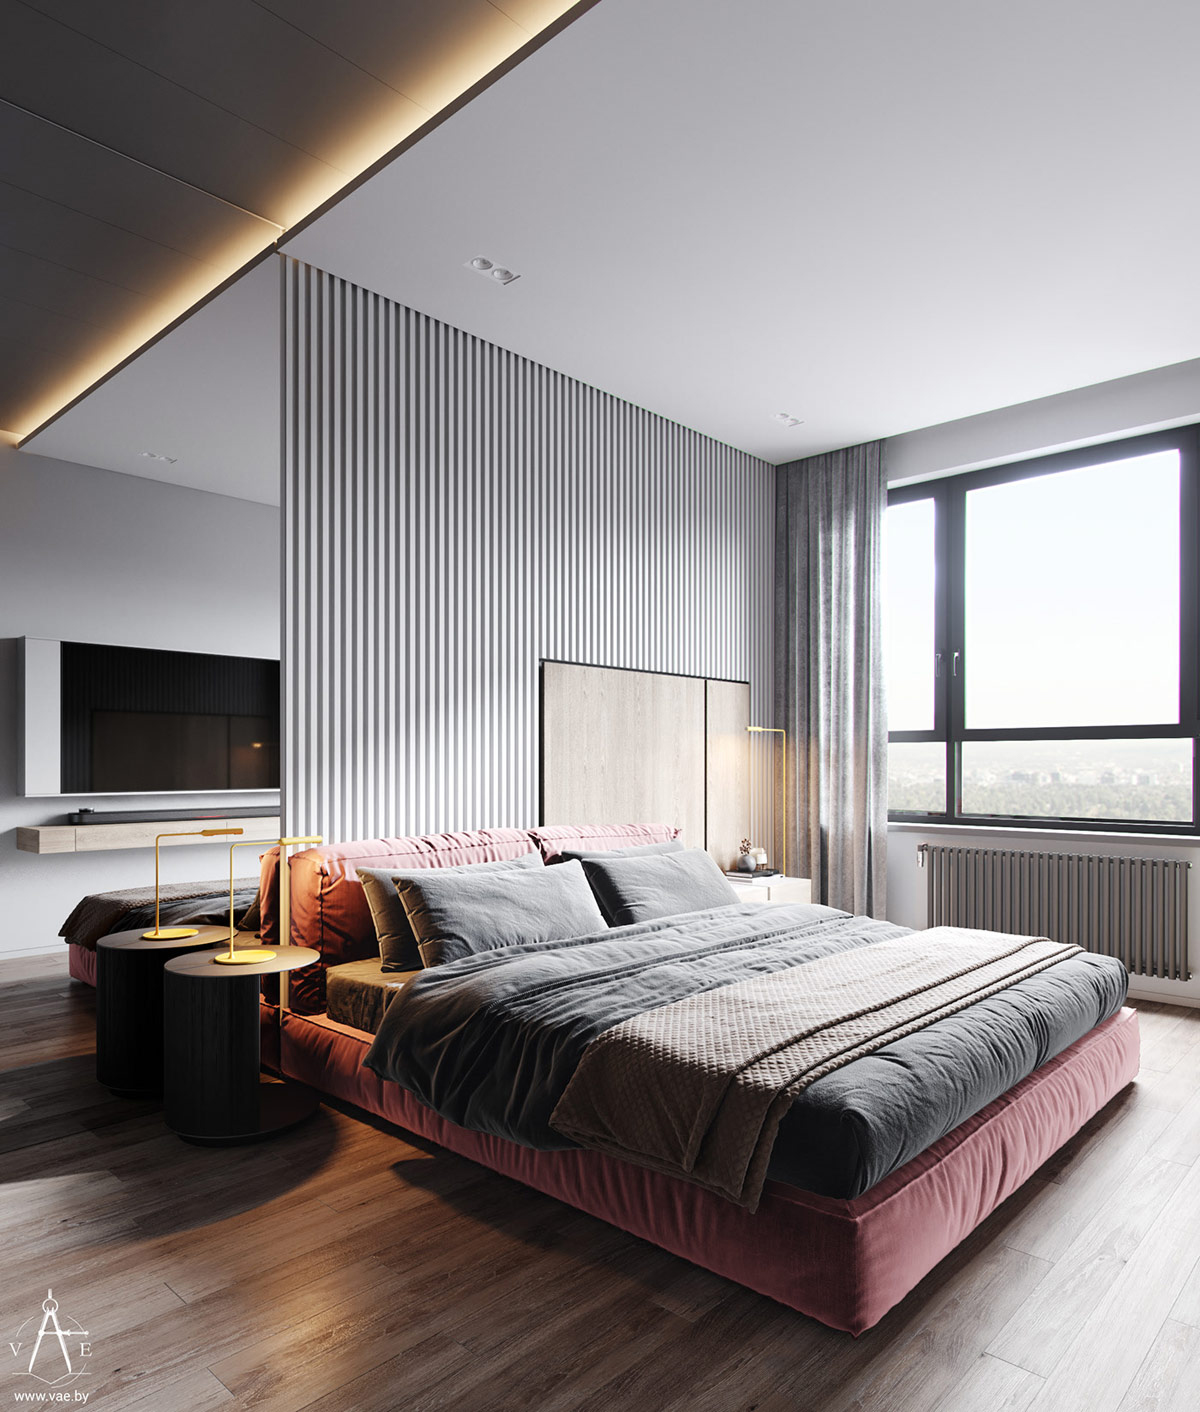 Không gian ngủ trở nên đẹp hơn khi có những điểm nhấn hài hòa về cả màu sắc nội thất và ánh sáng.